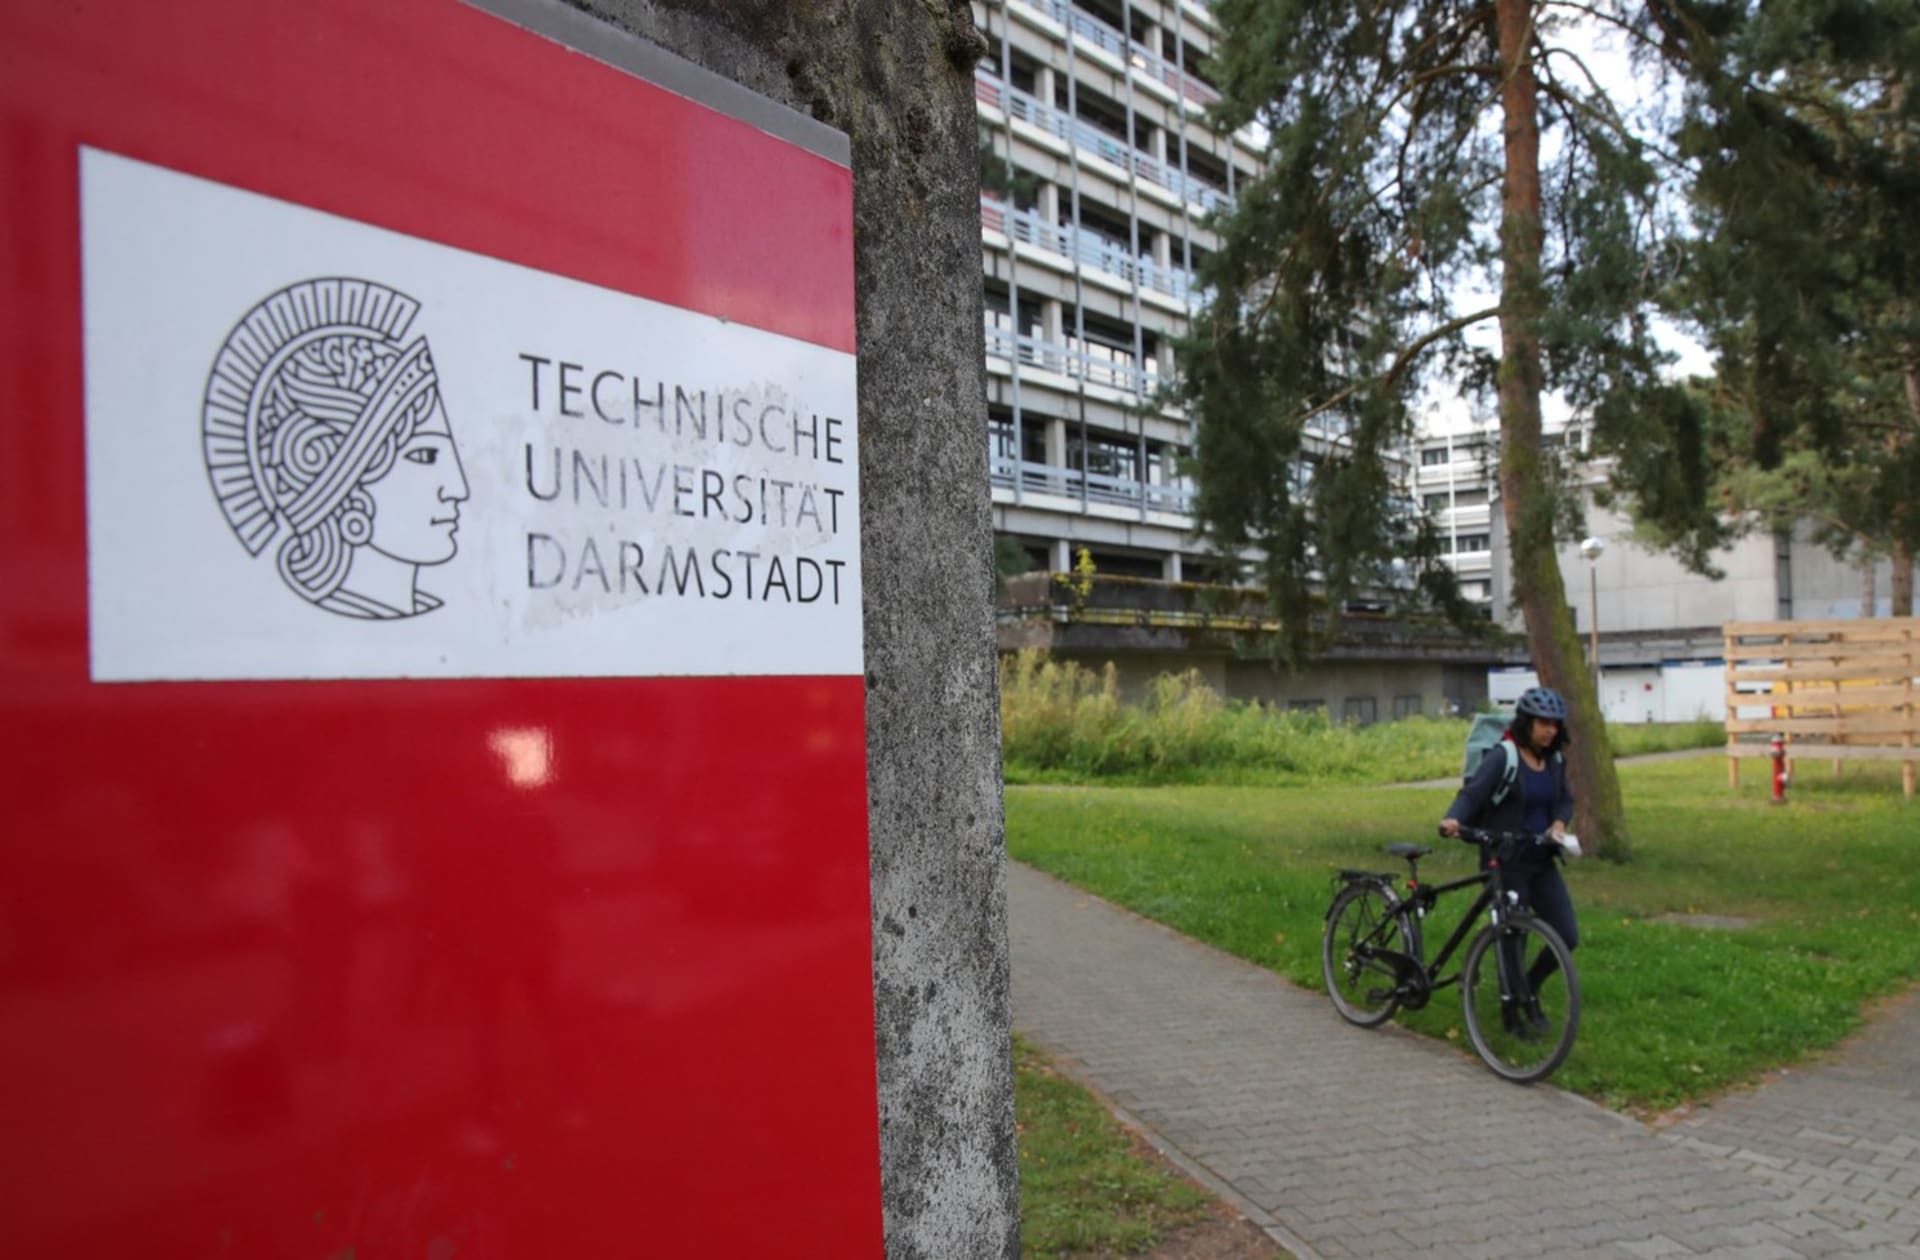 Technické univerzita Darmstadt